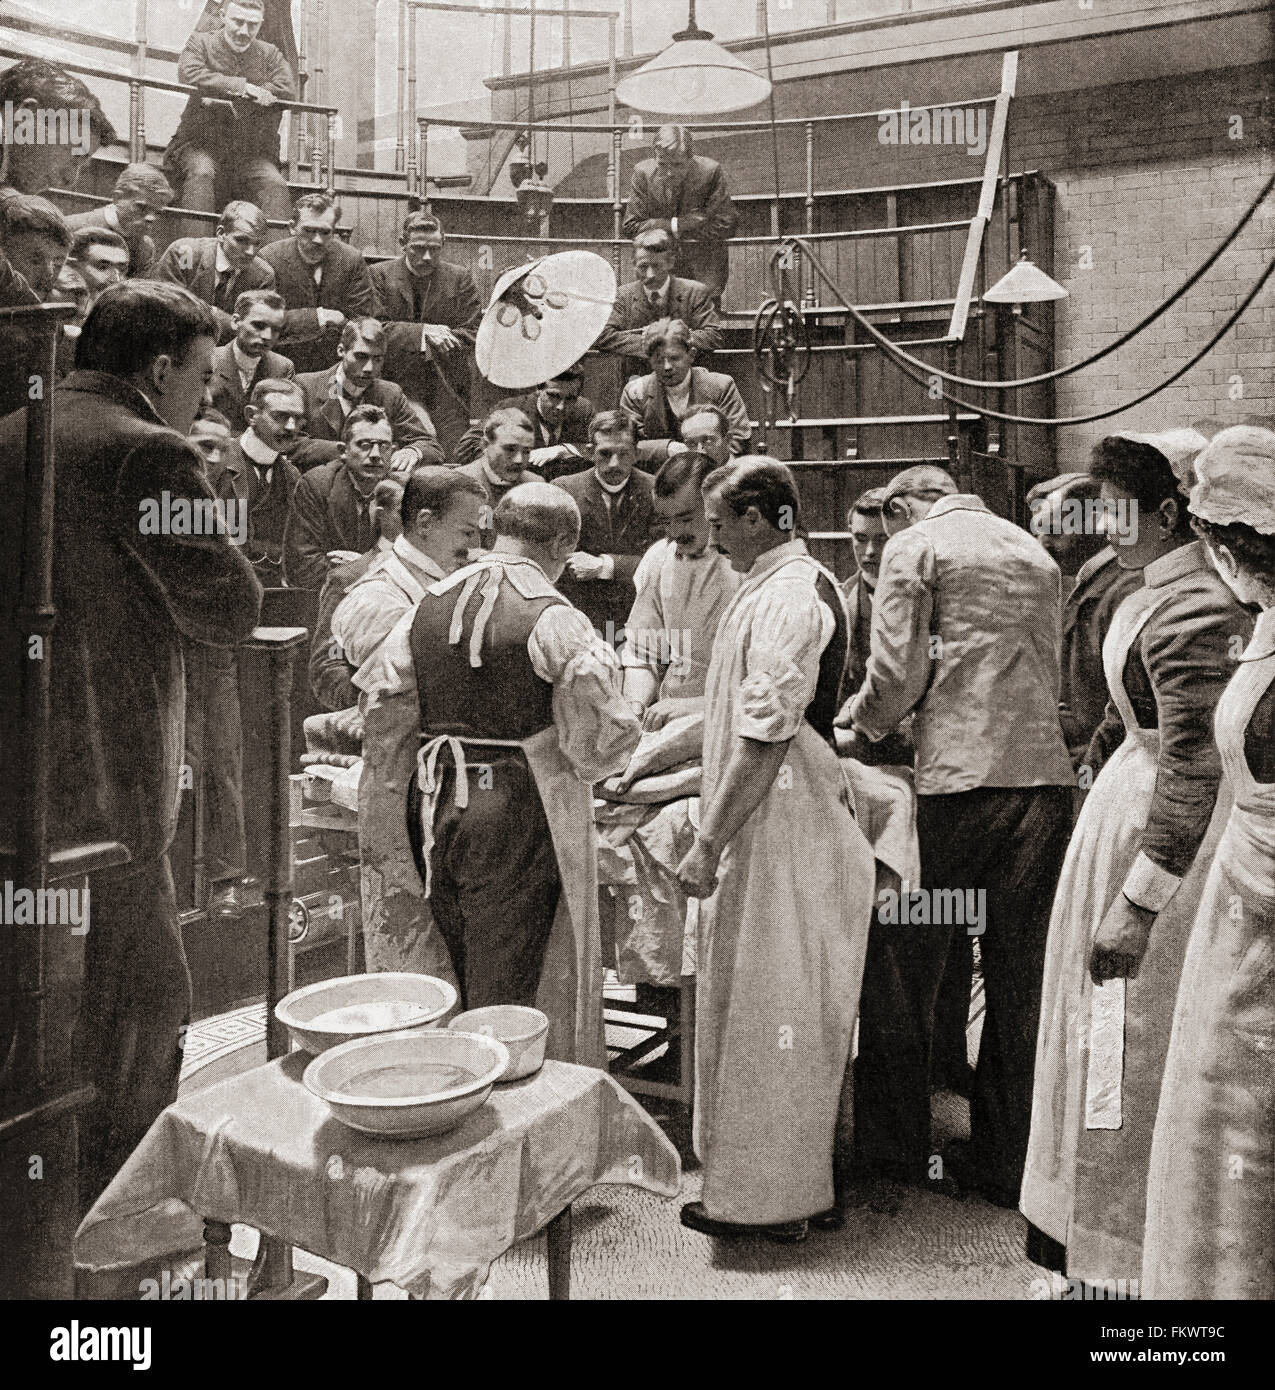 Une opération à l'hôpital de Charing Cross, Londres, Angleterre à la fin du xixe siècle. Banque D'Images